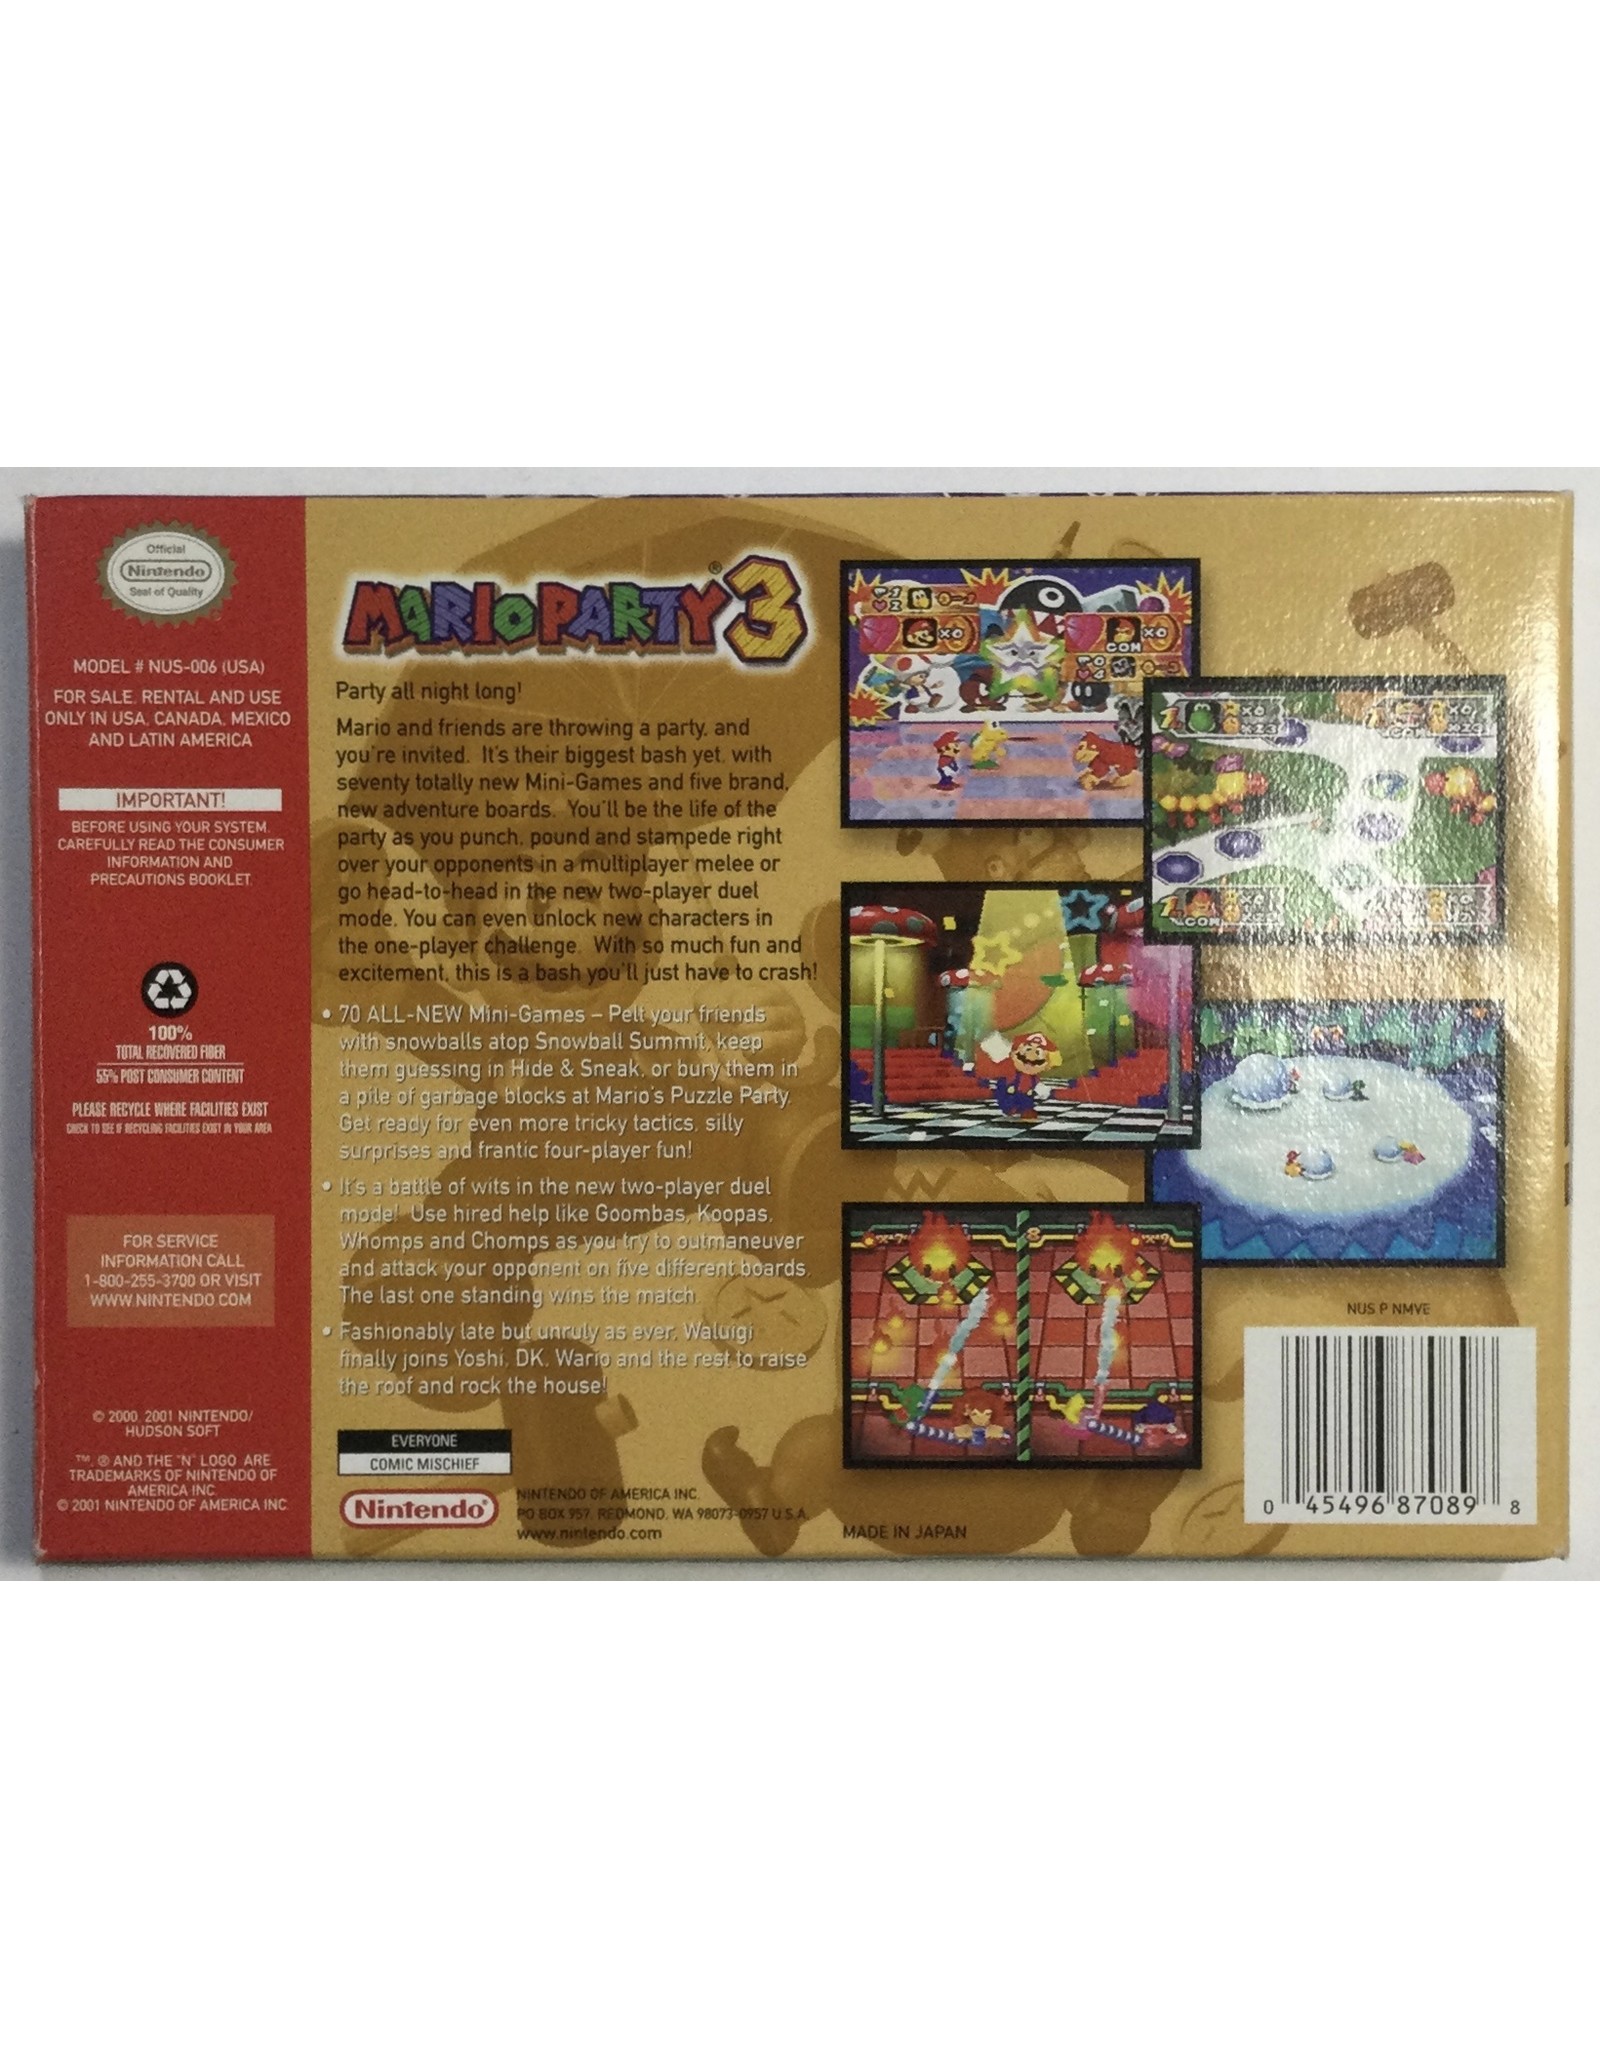 Nintendo Mario Party 3 for Nintendo 64 (N64) - CIB